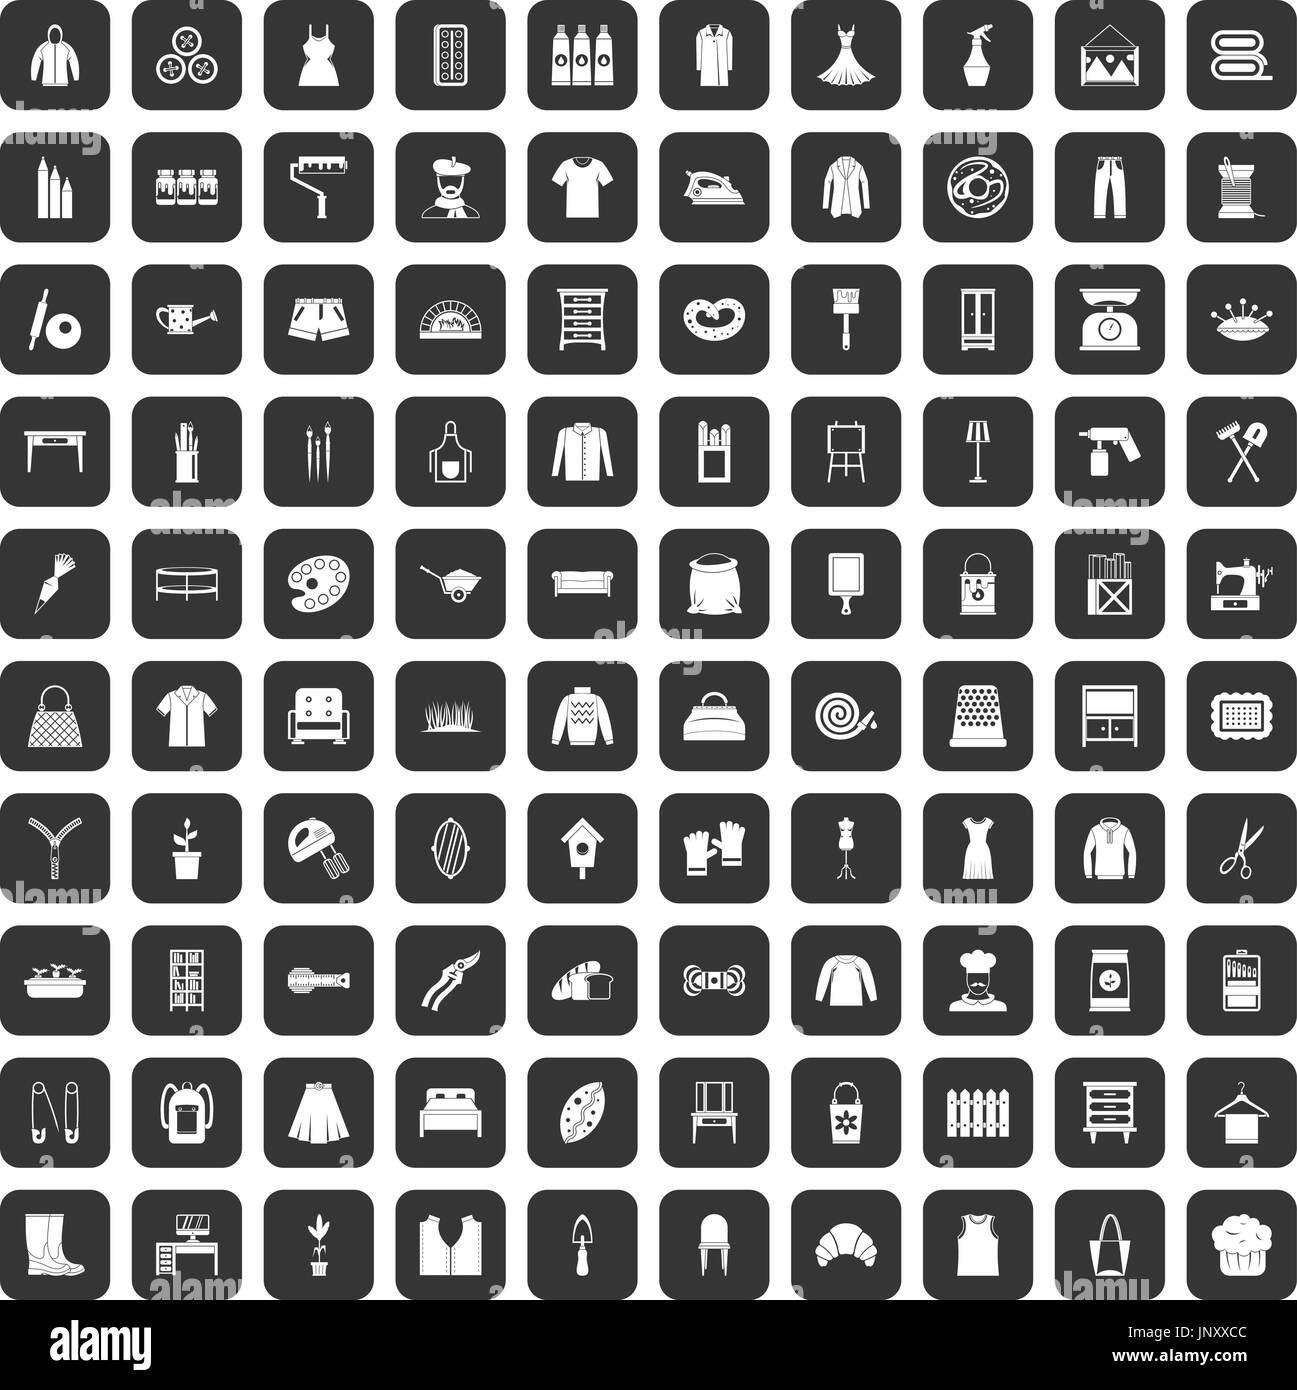 100 Handarbeit Icons set schwarz Stock Vektor